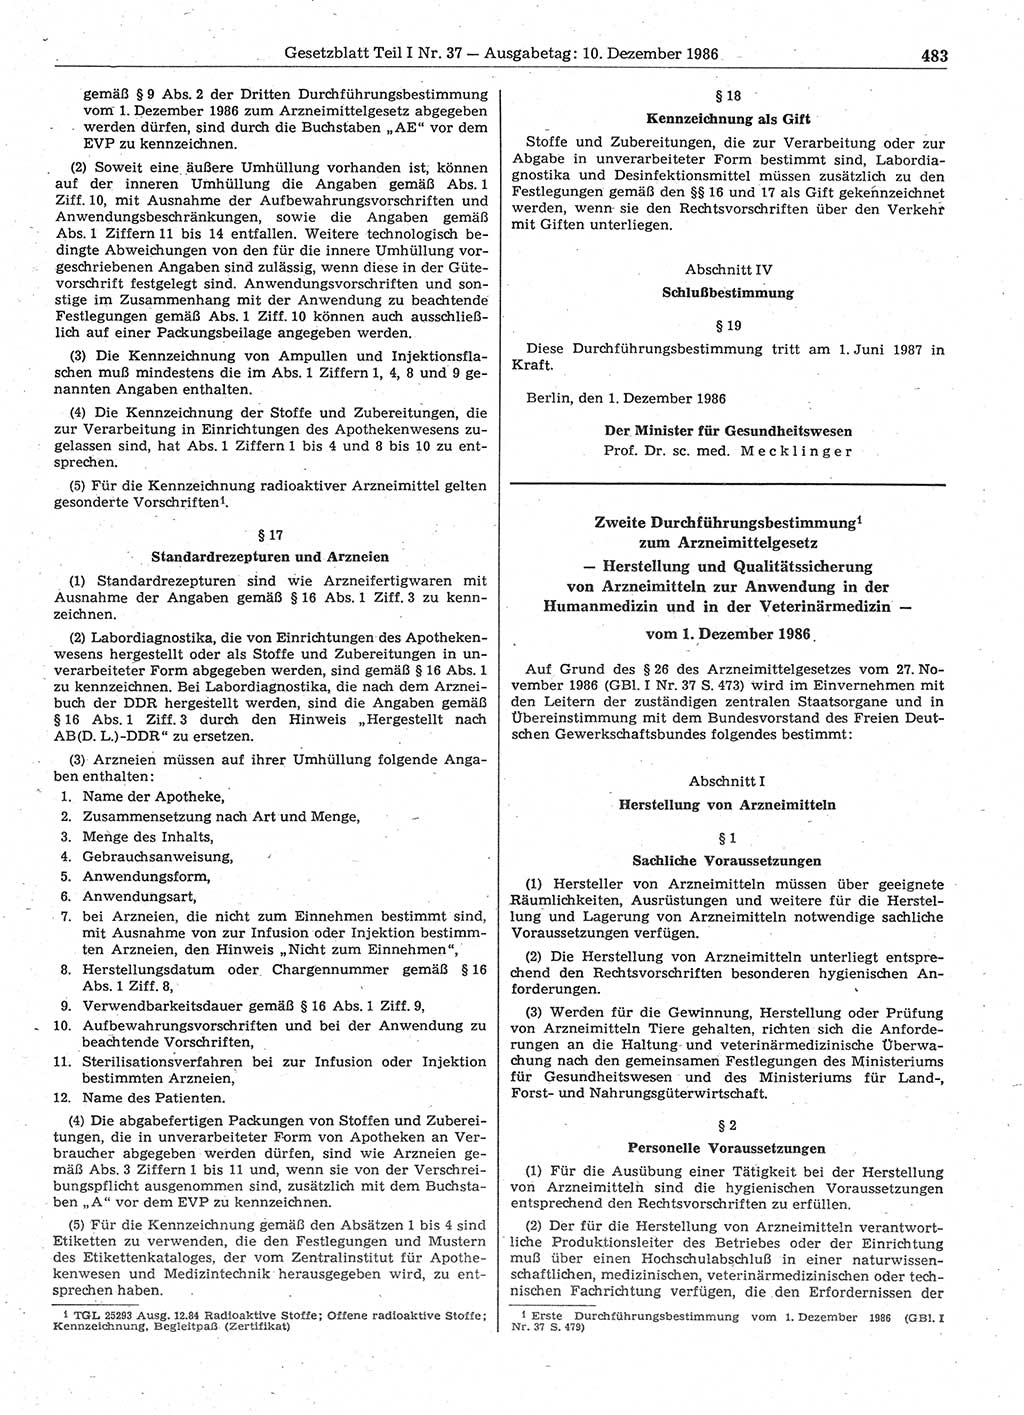 Gesetzblatt (GBl.) der Deutschen Demokratischen Republik (DDR) Teil Ⅰ 1986, Seite 483 (GBl. DDR Ⅰ 1986, S. 483)